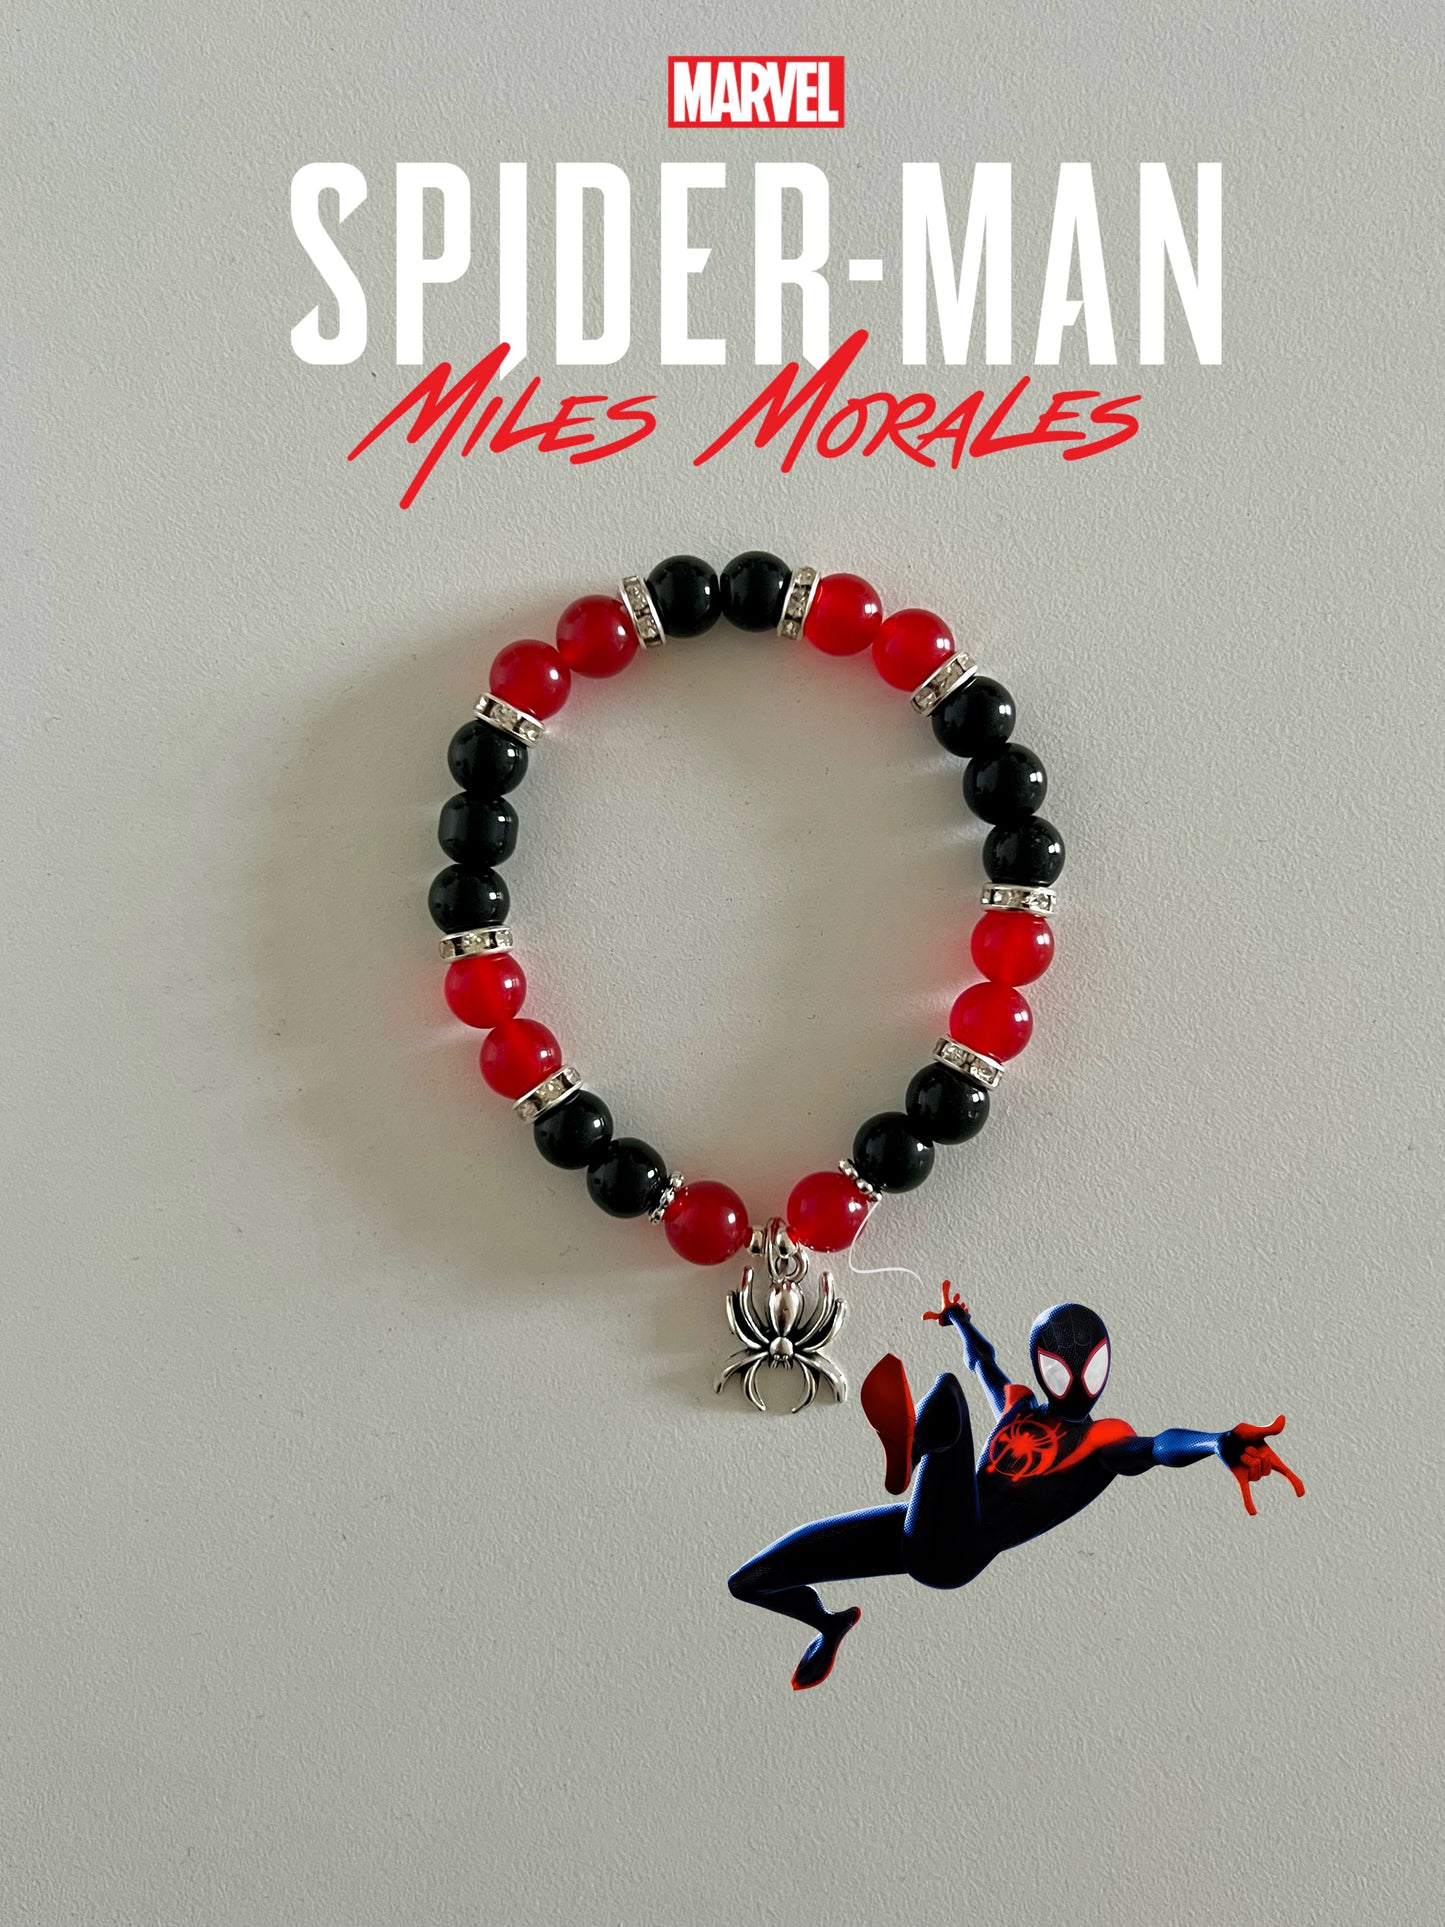 Spiderman beaded bracelet